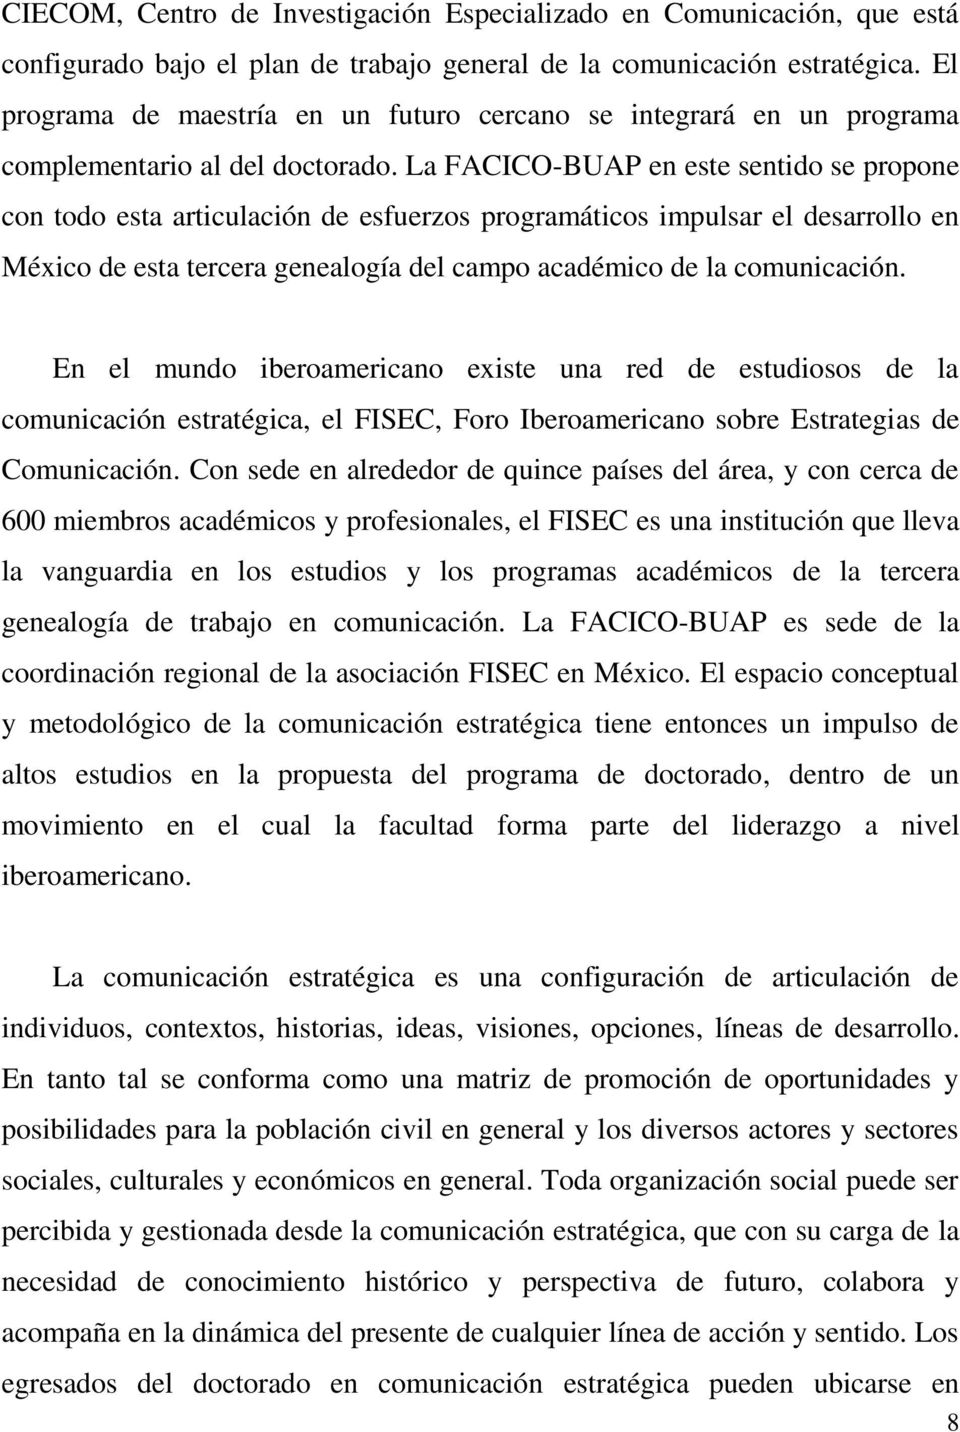 La FACICO-BUAP en este sentido se propone con todo esta articulación de esfuerzos programáticos impulsar el desarrollo en México de esta tercera genealogía del campo académico de la comunicación.